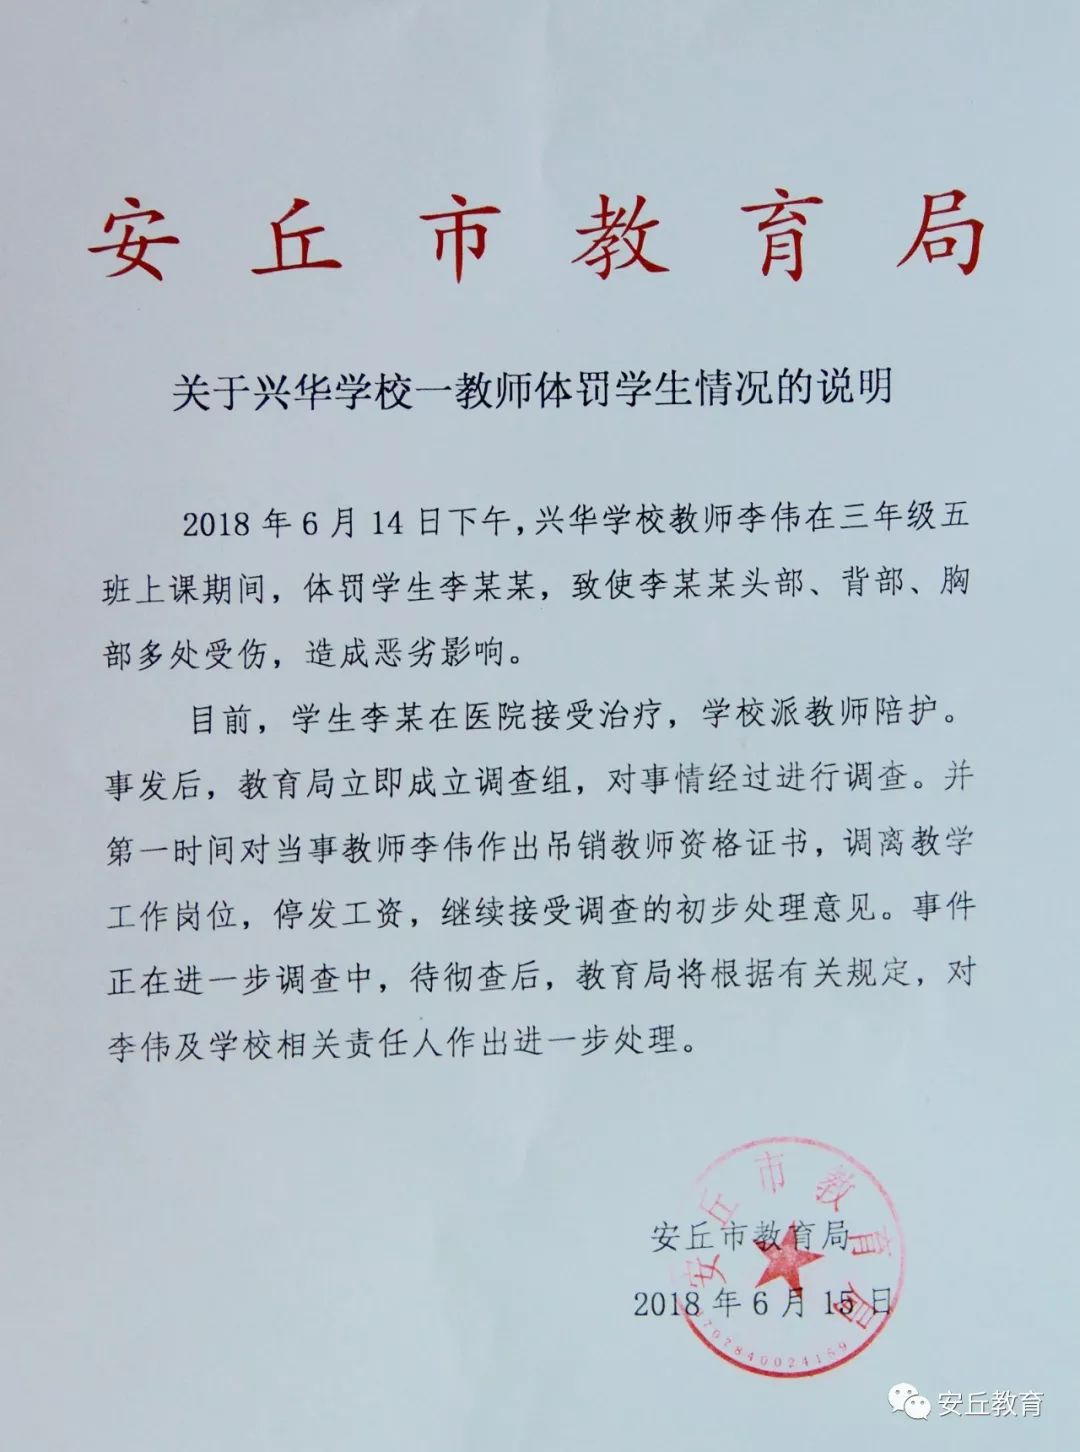 潍坊一教师体罚学生,被吊销教师资格证、停发